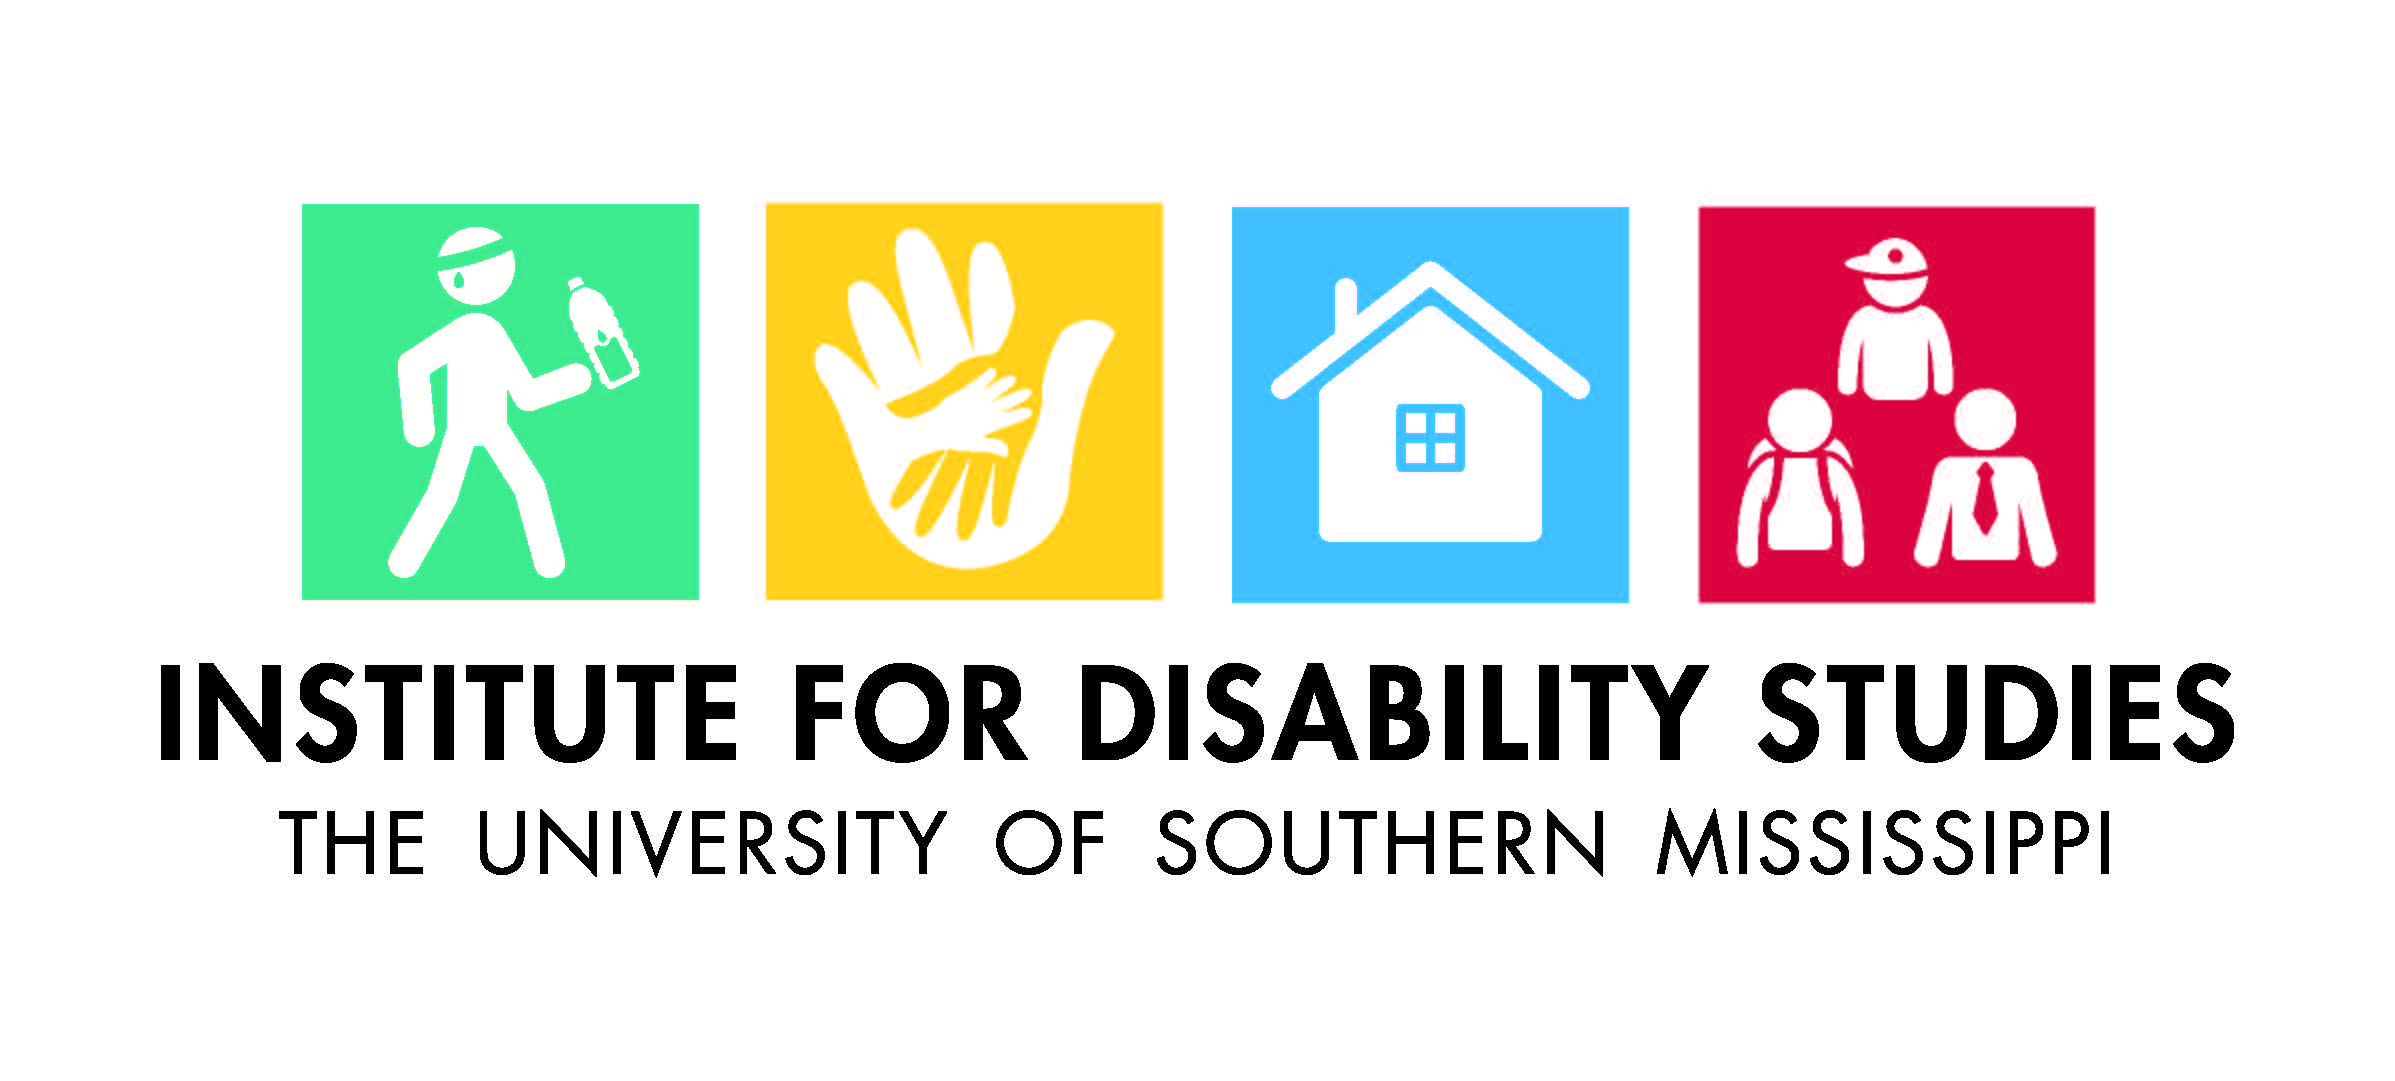 Institute for Disabilty Studies